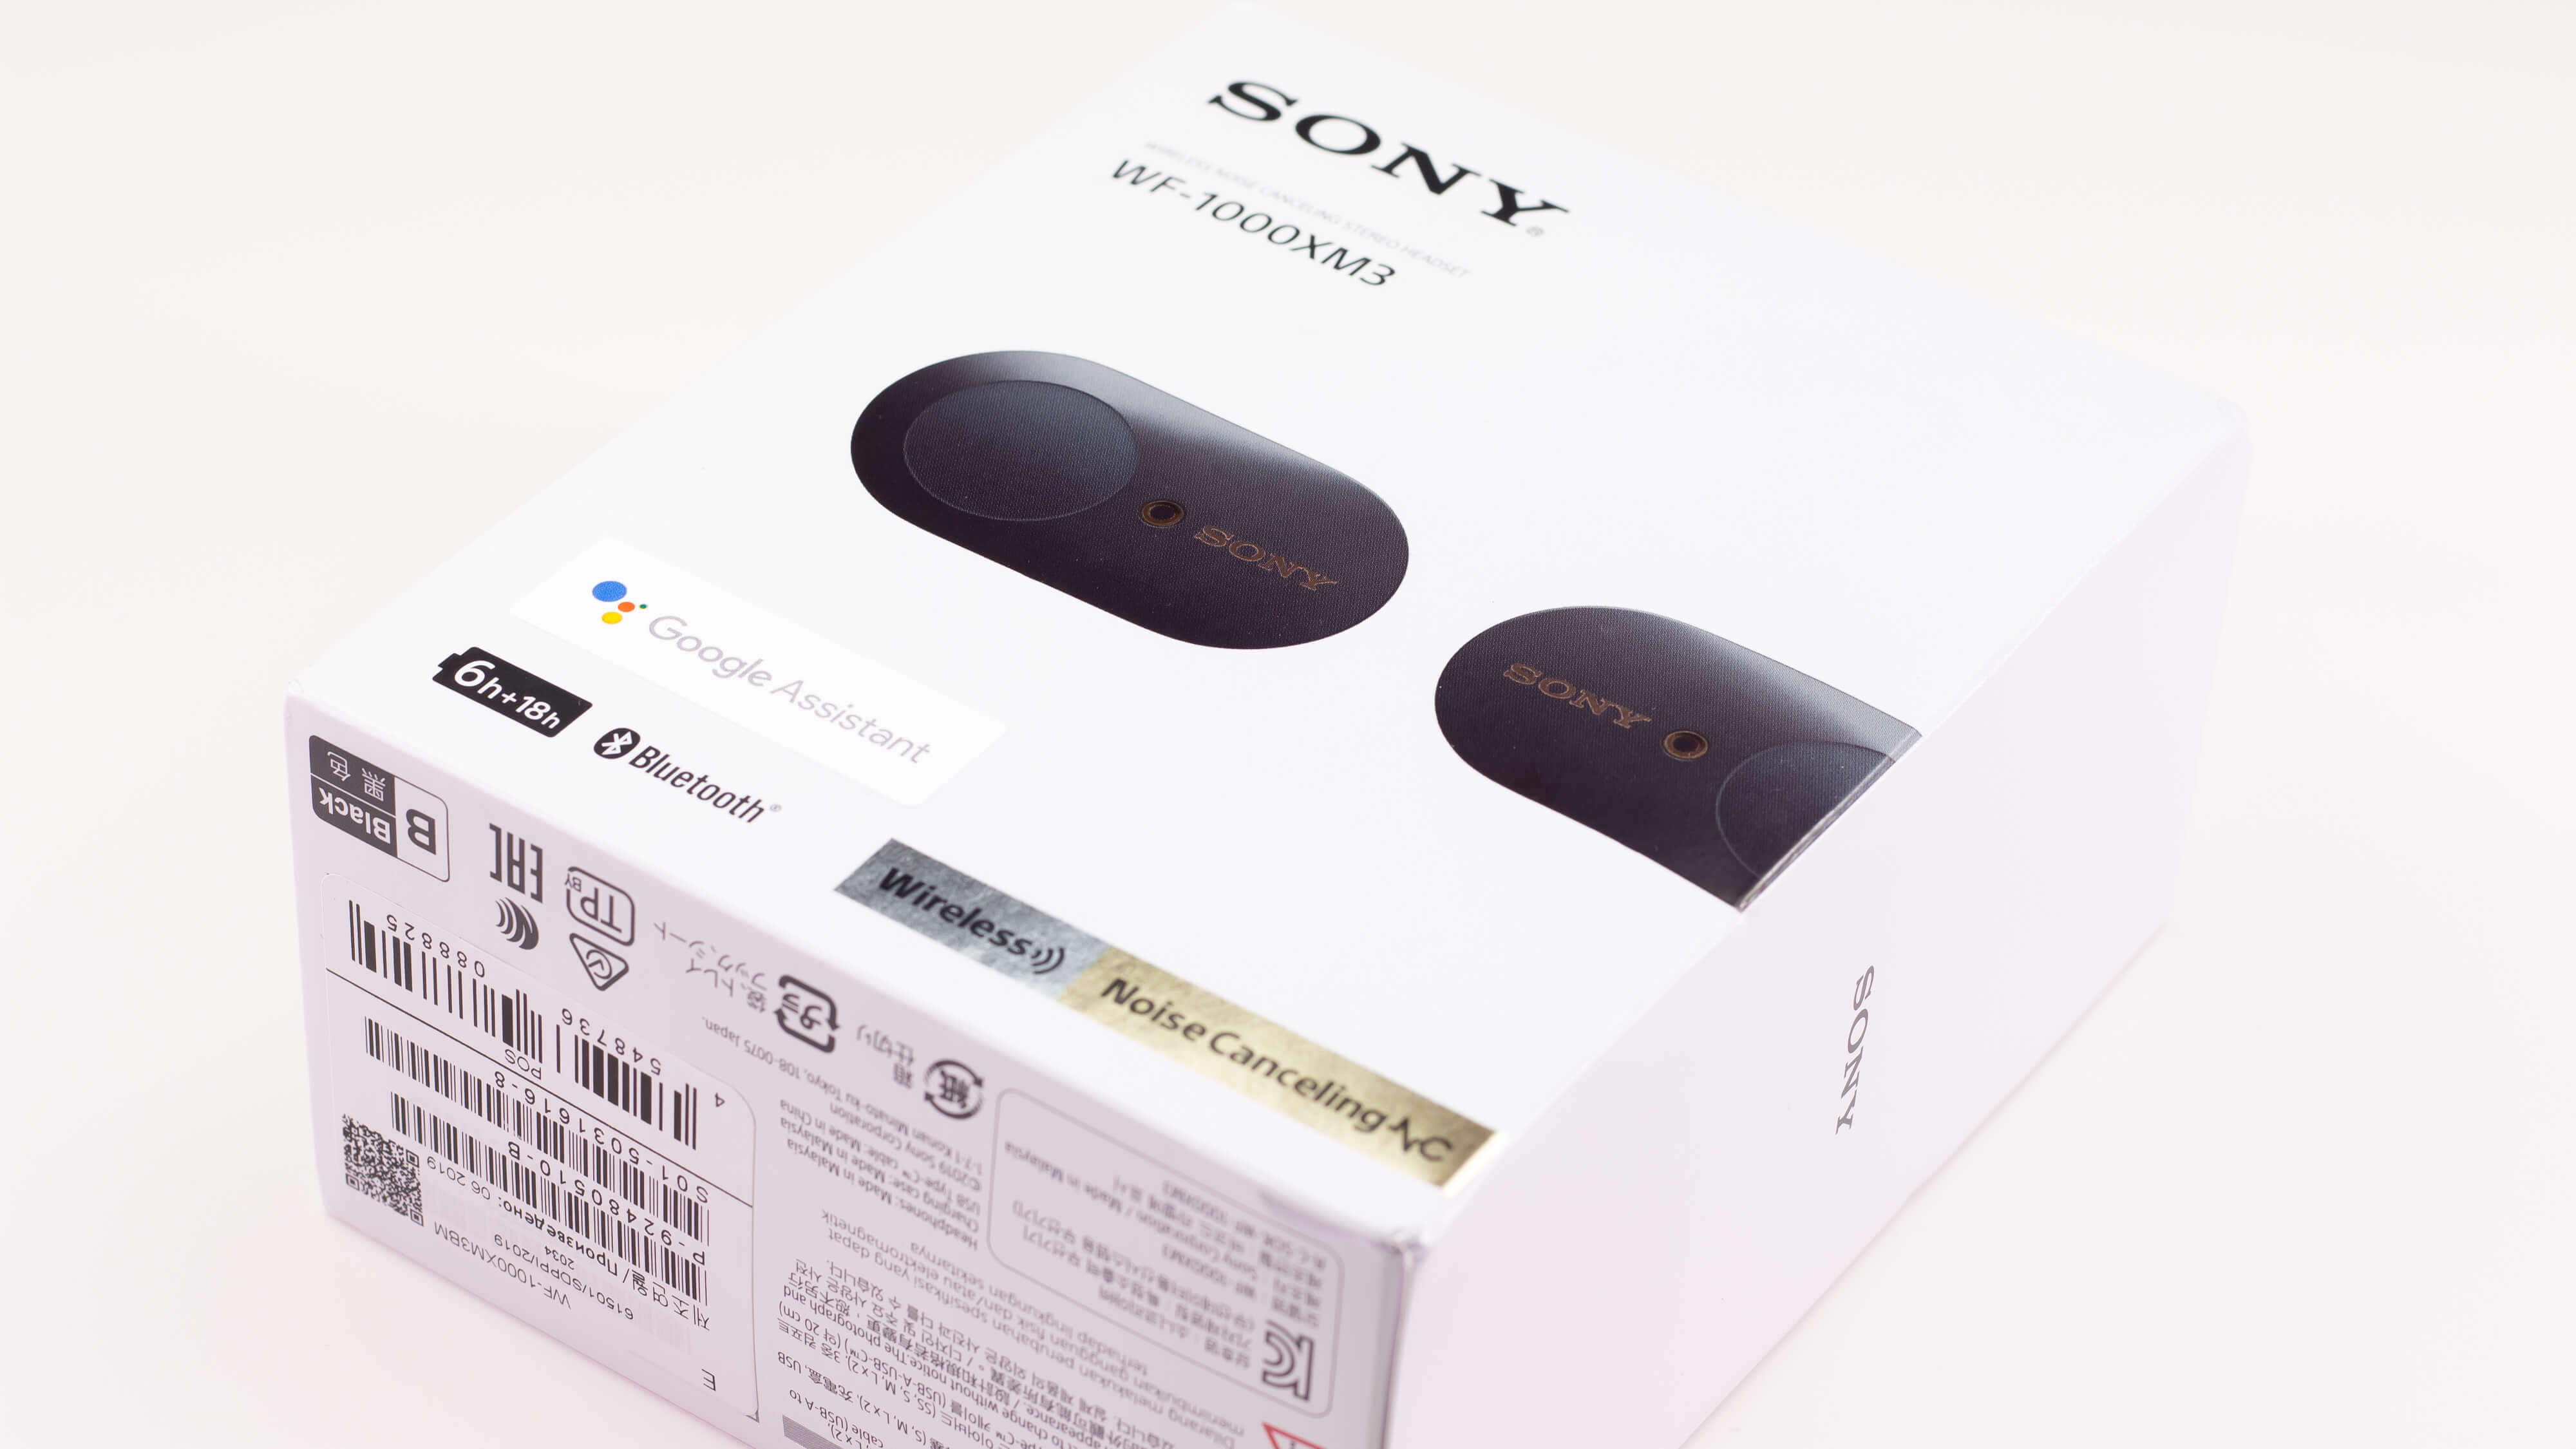 Sony WF-1000XM3 True Wireless Earbuds Review - Samma3a Tech